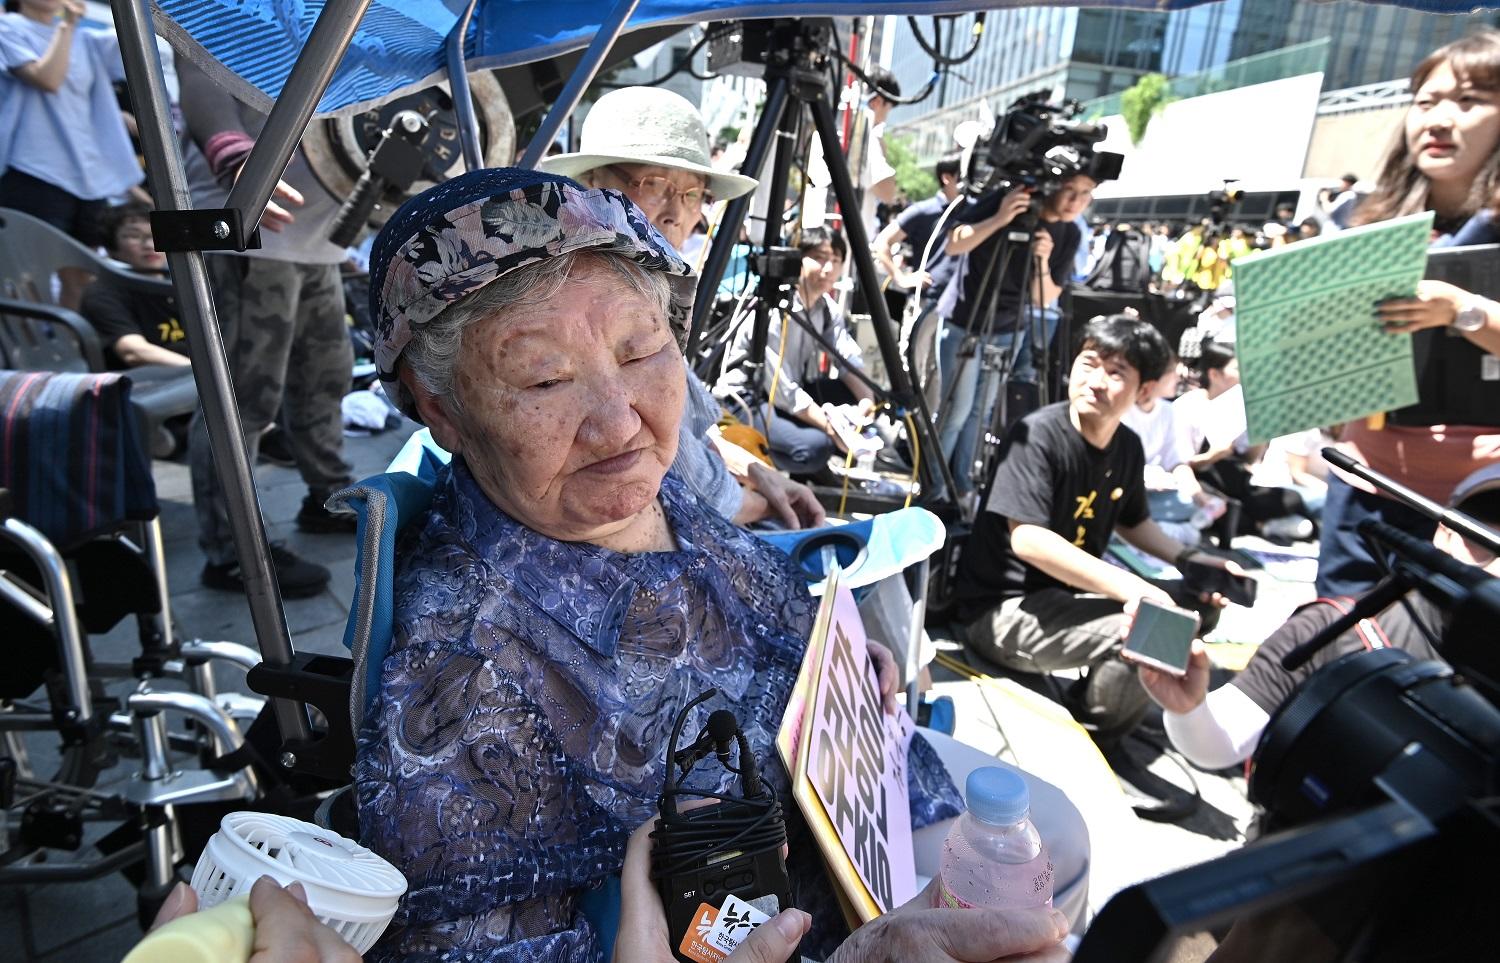 امرأة من كوريا الجنوبية متضررة من قضية "العمالة بالسخرة" لدى الجيش الياباني خلال الحرب العالمية الثانية، 14 أغسطس 2019. أ ف ب 